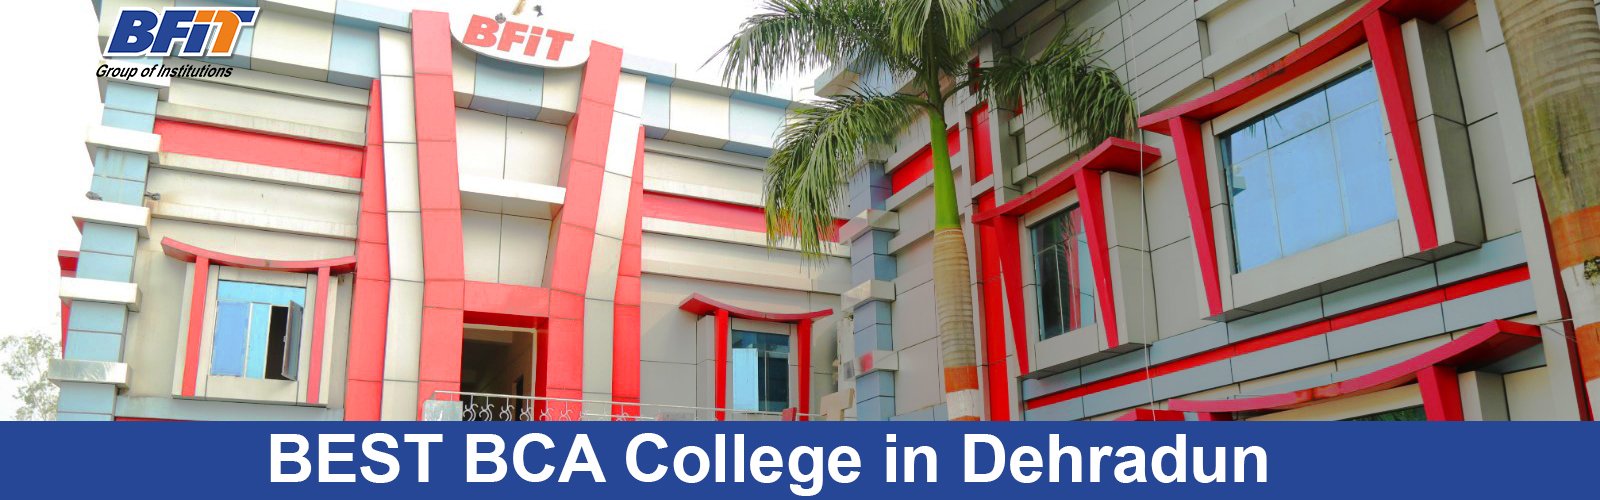 Best BCA College in Dehradun-A